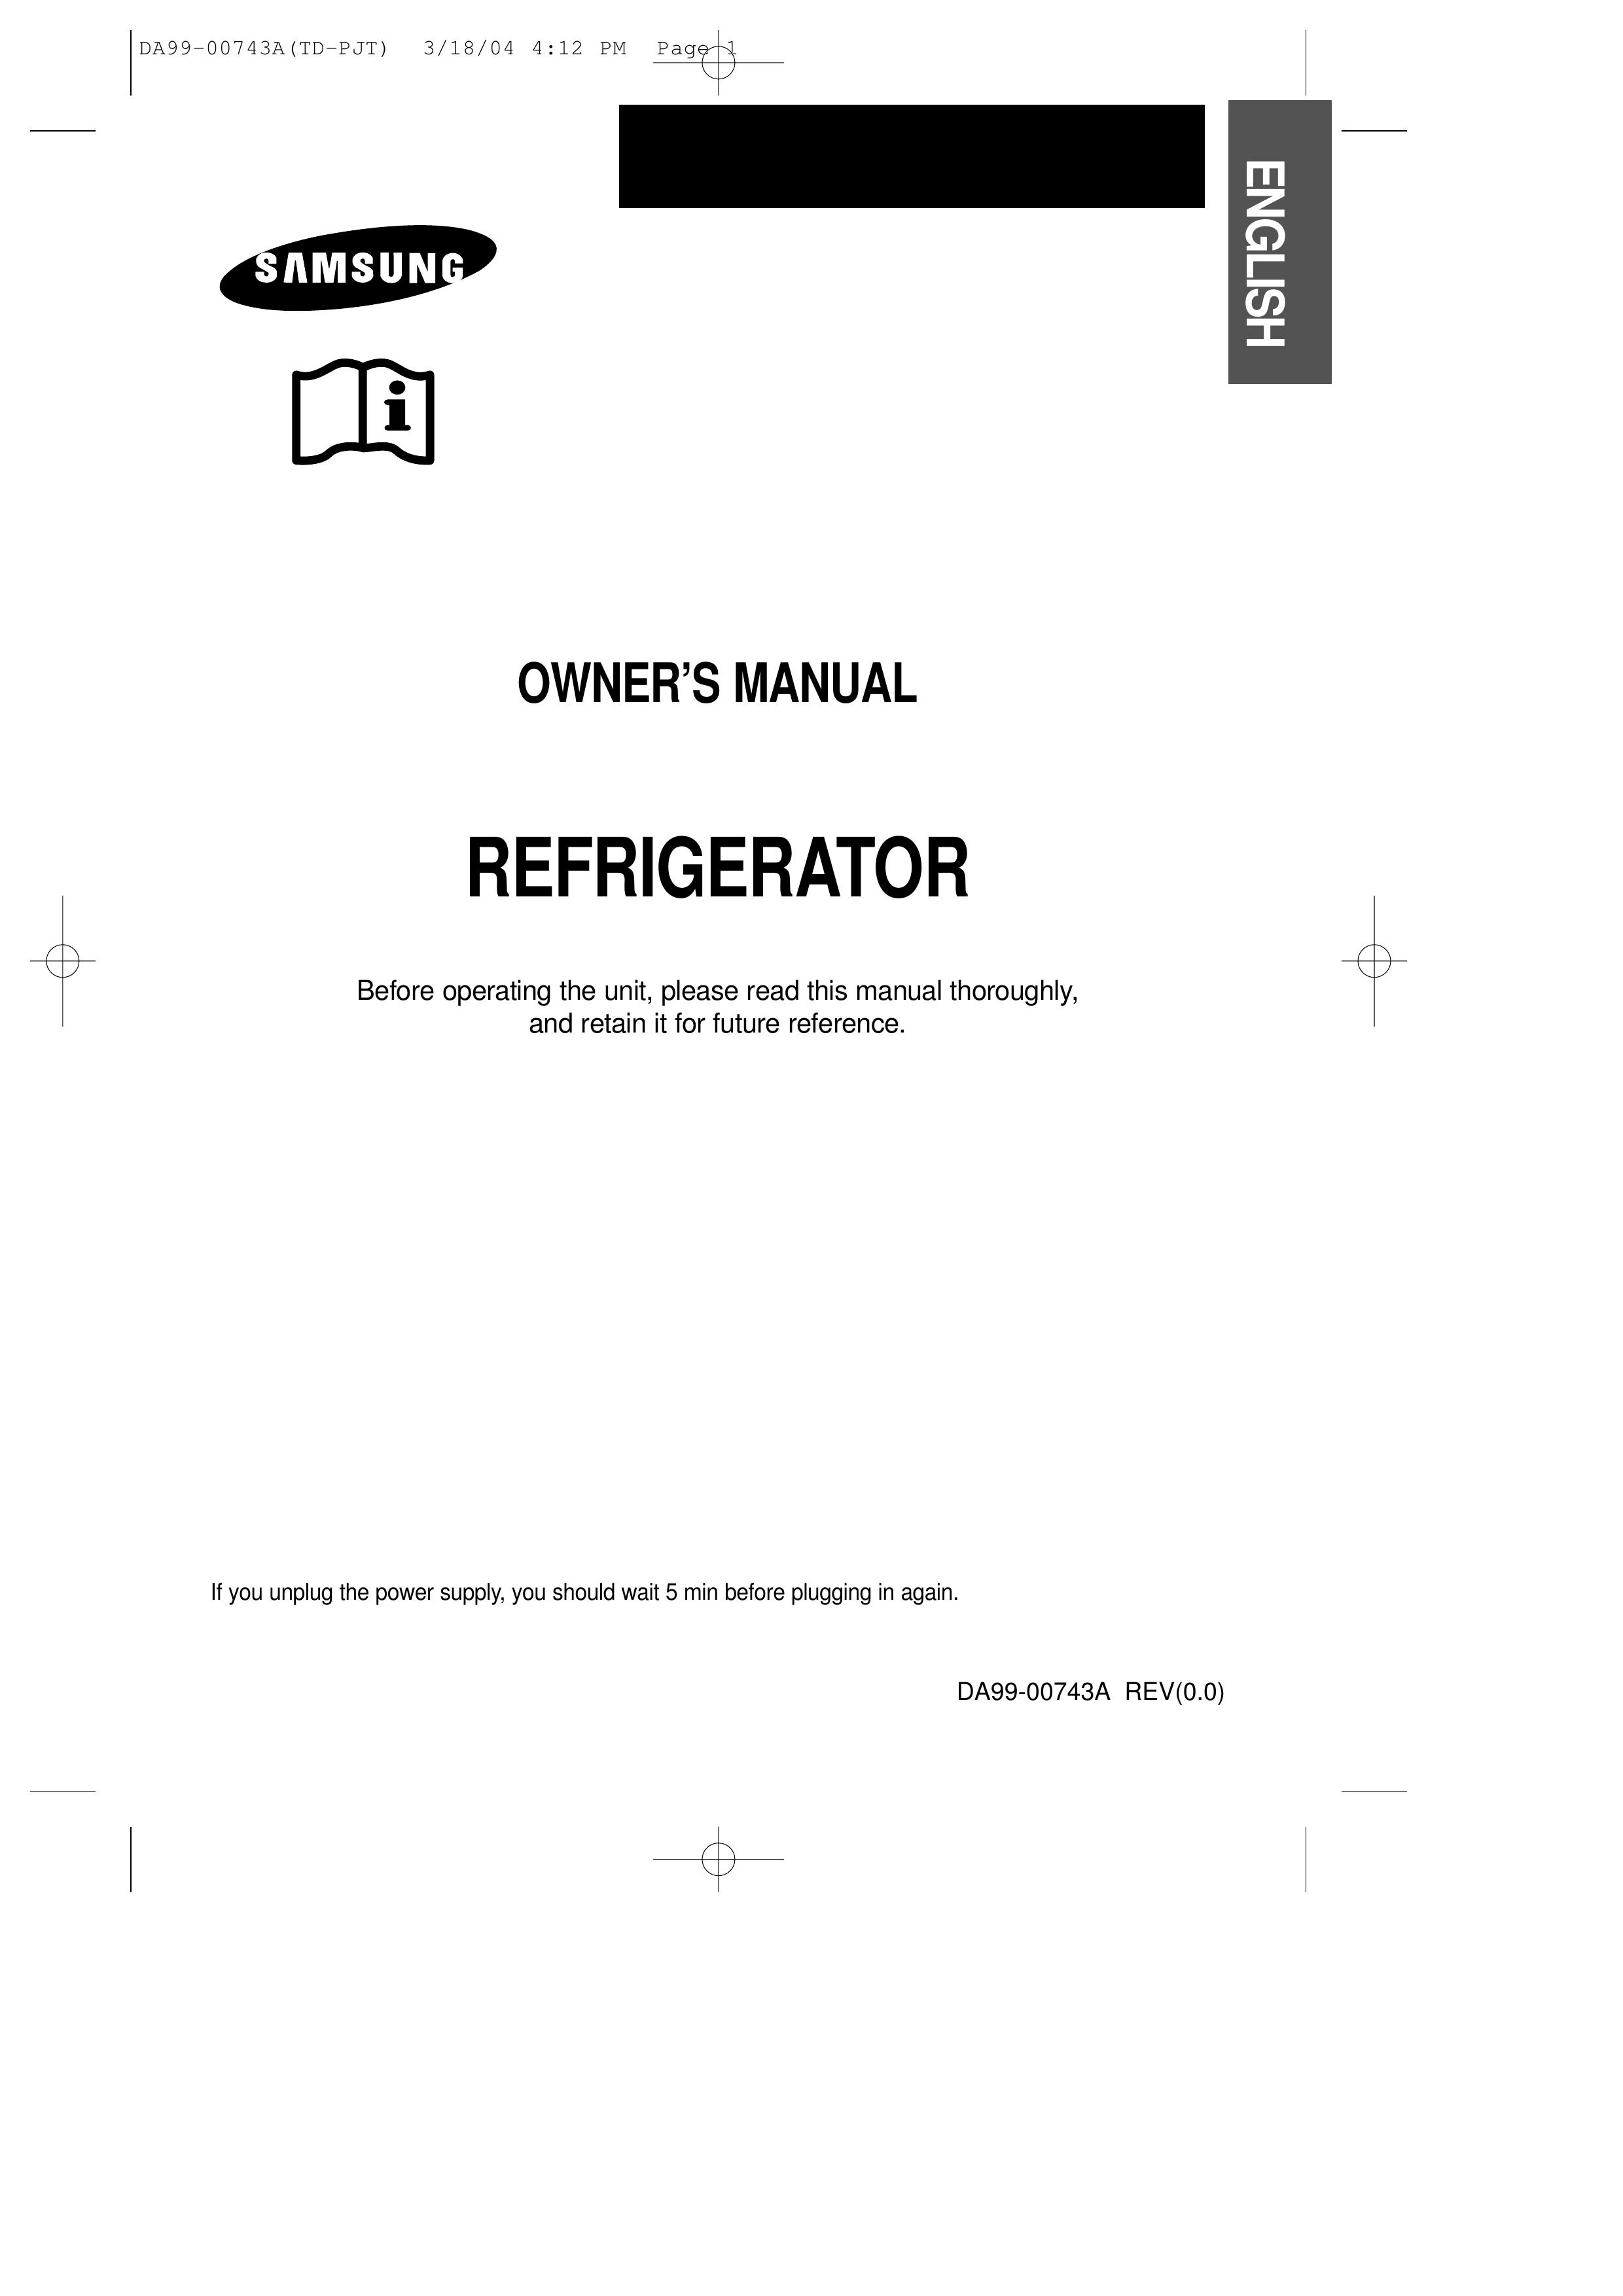 Samsung DA99-00743A Refrigerator User Manual